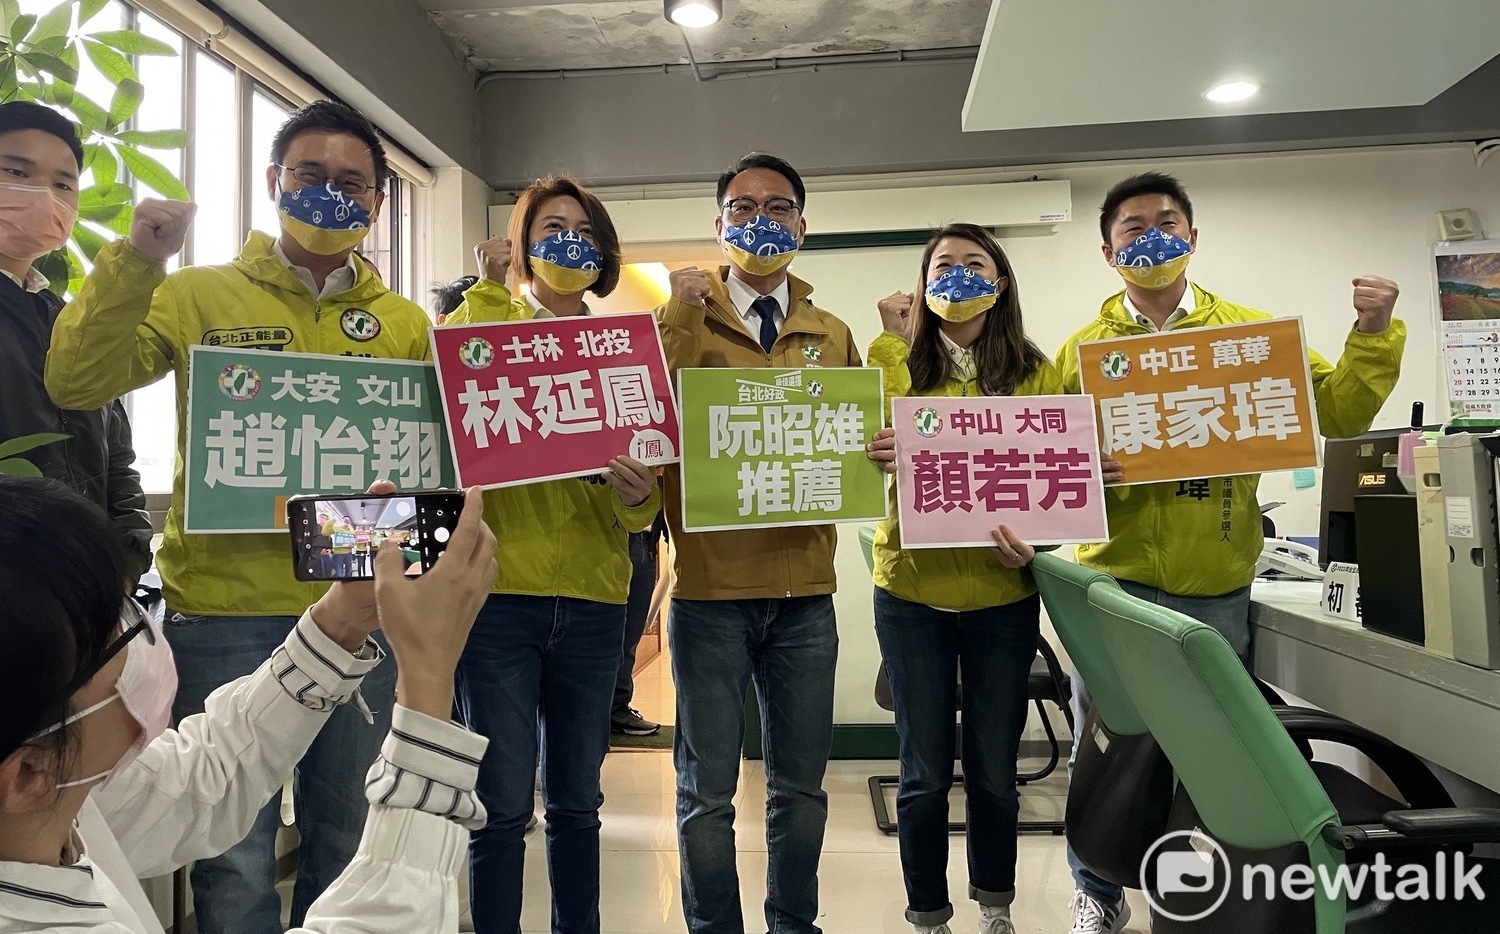 湧言會「台北好政連線」登記爭取議員提名 無特定支持台北市長人選 | 政治